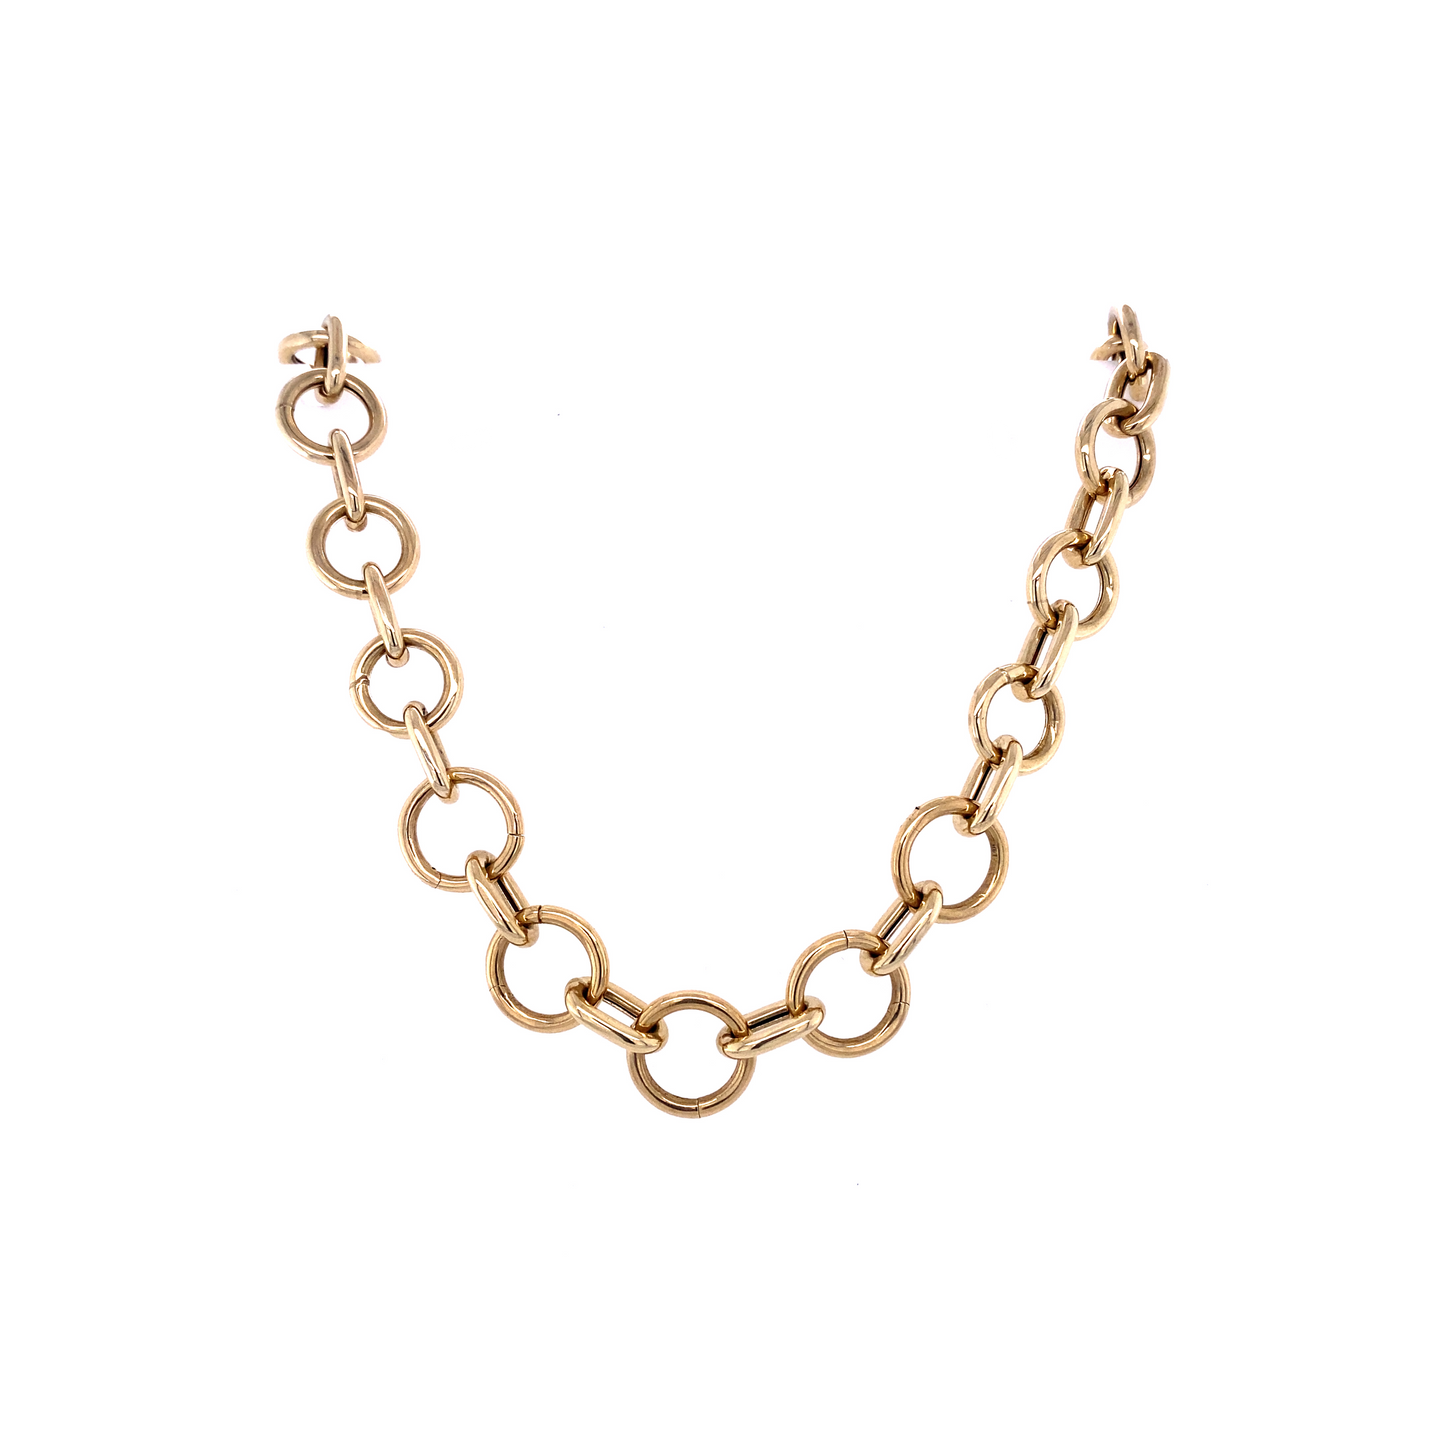 Gold & Link Charm Holder Necklace